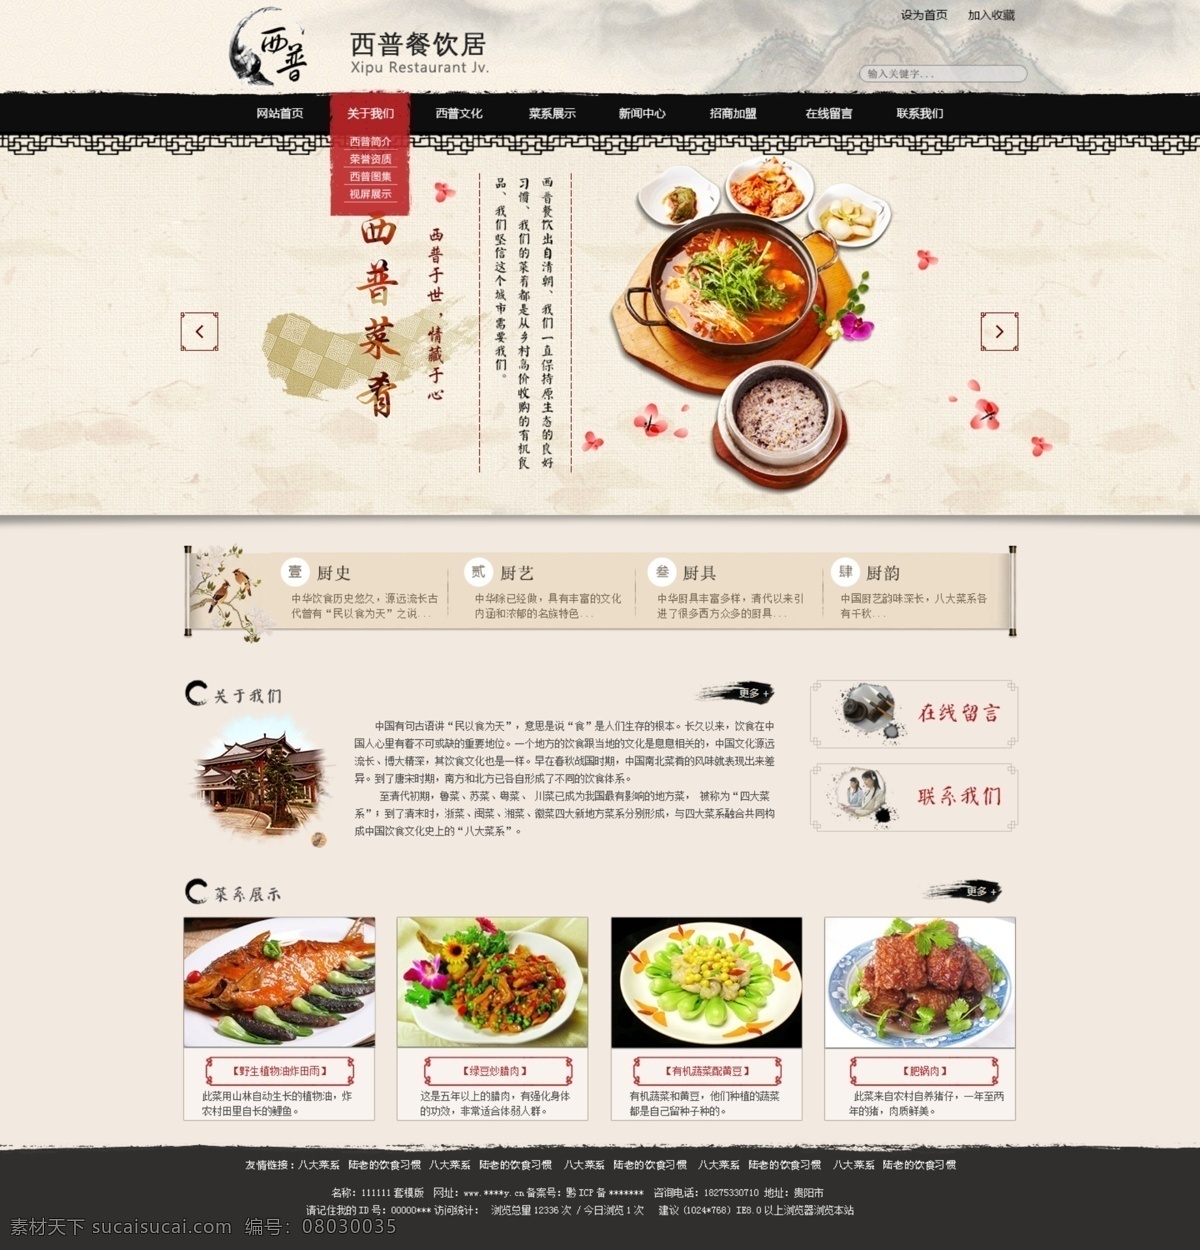 餐饮网页 中国风 中国风网页 食品网页 精美网页 水墨网页 网页设计 web 界面设计 中文模板